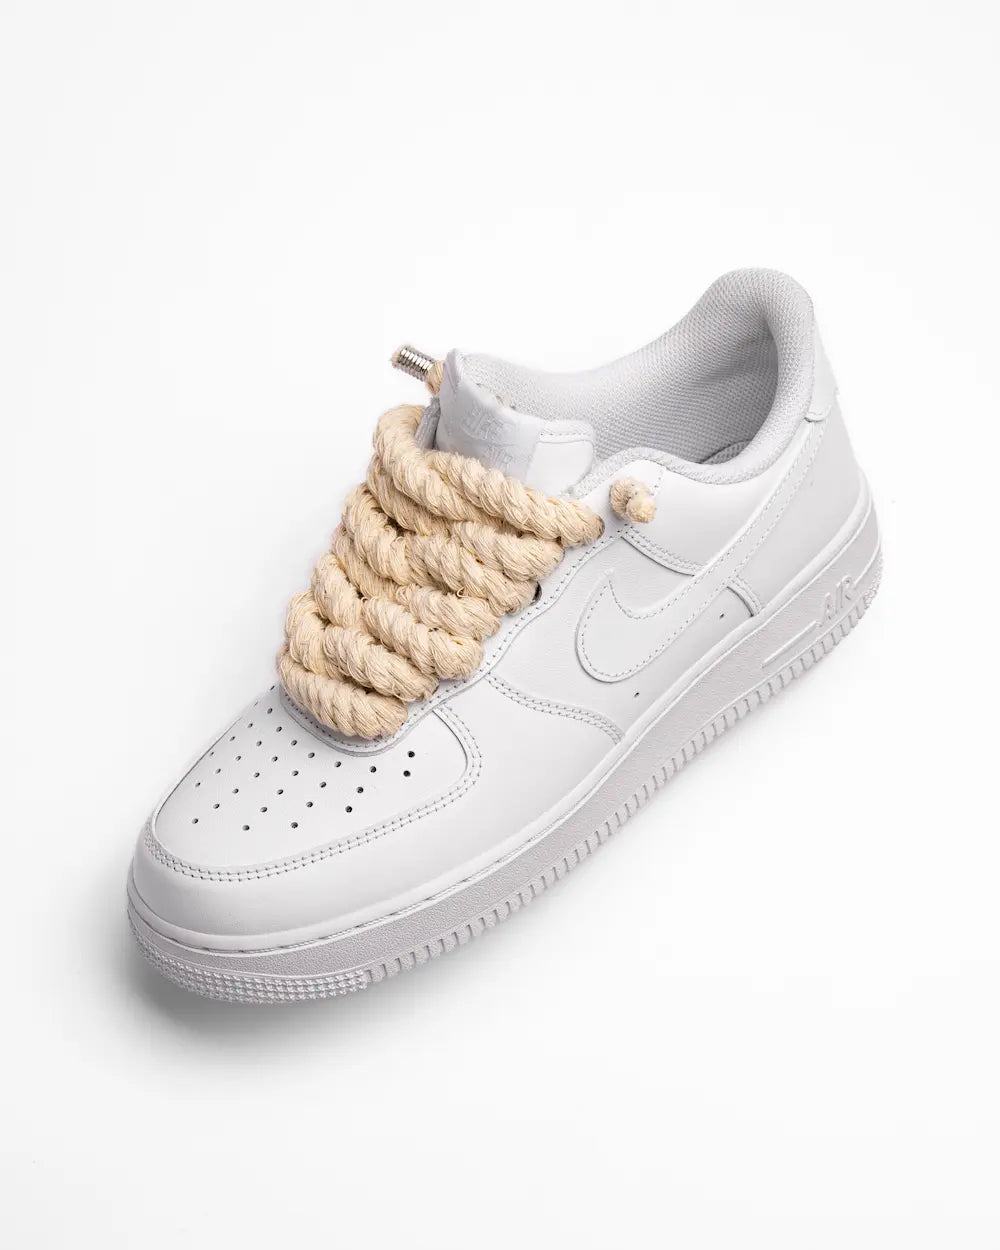 Nike Air Force 1 bianca personalizzata con lacci in corda beige